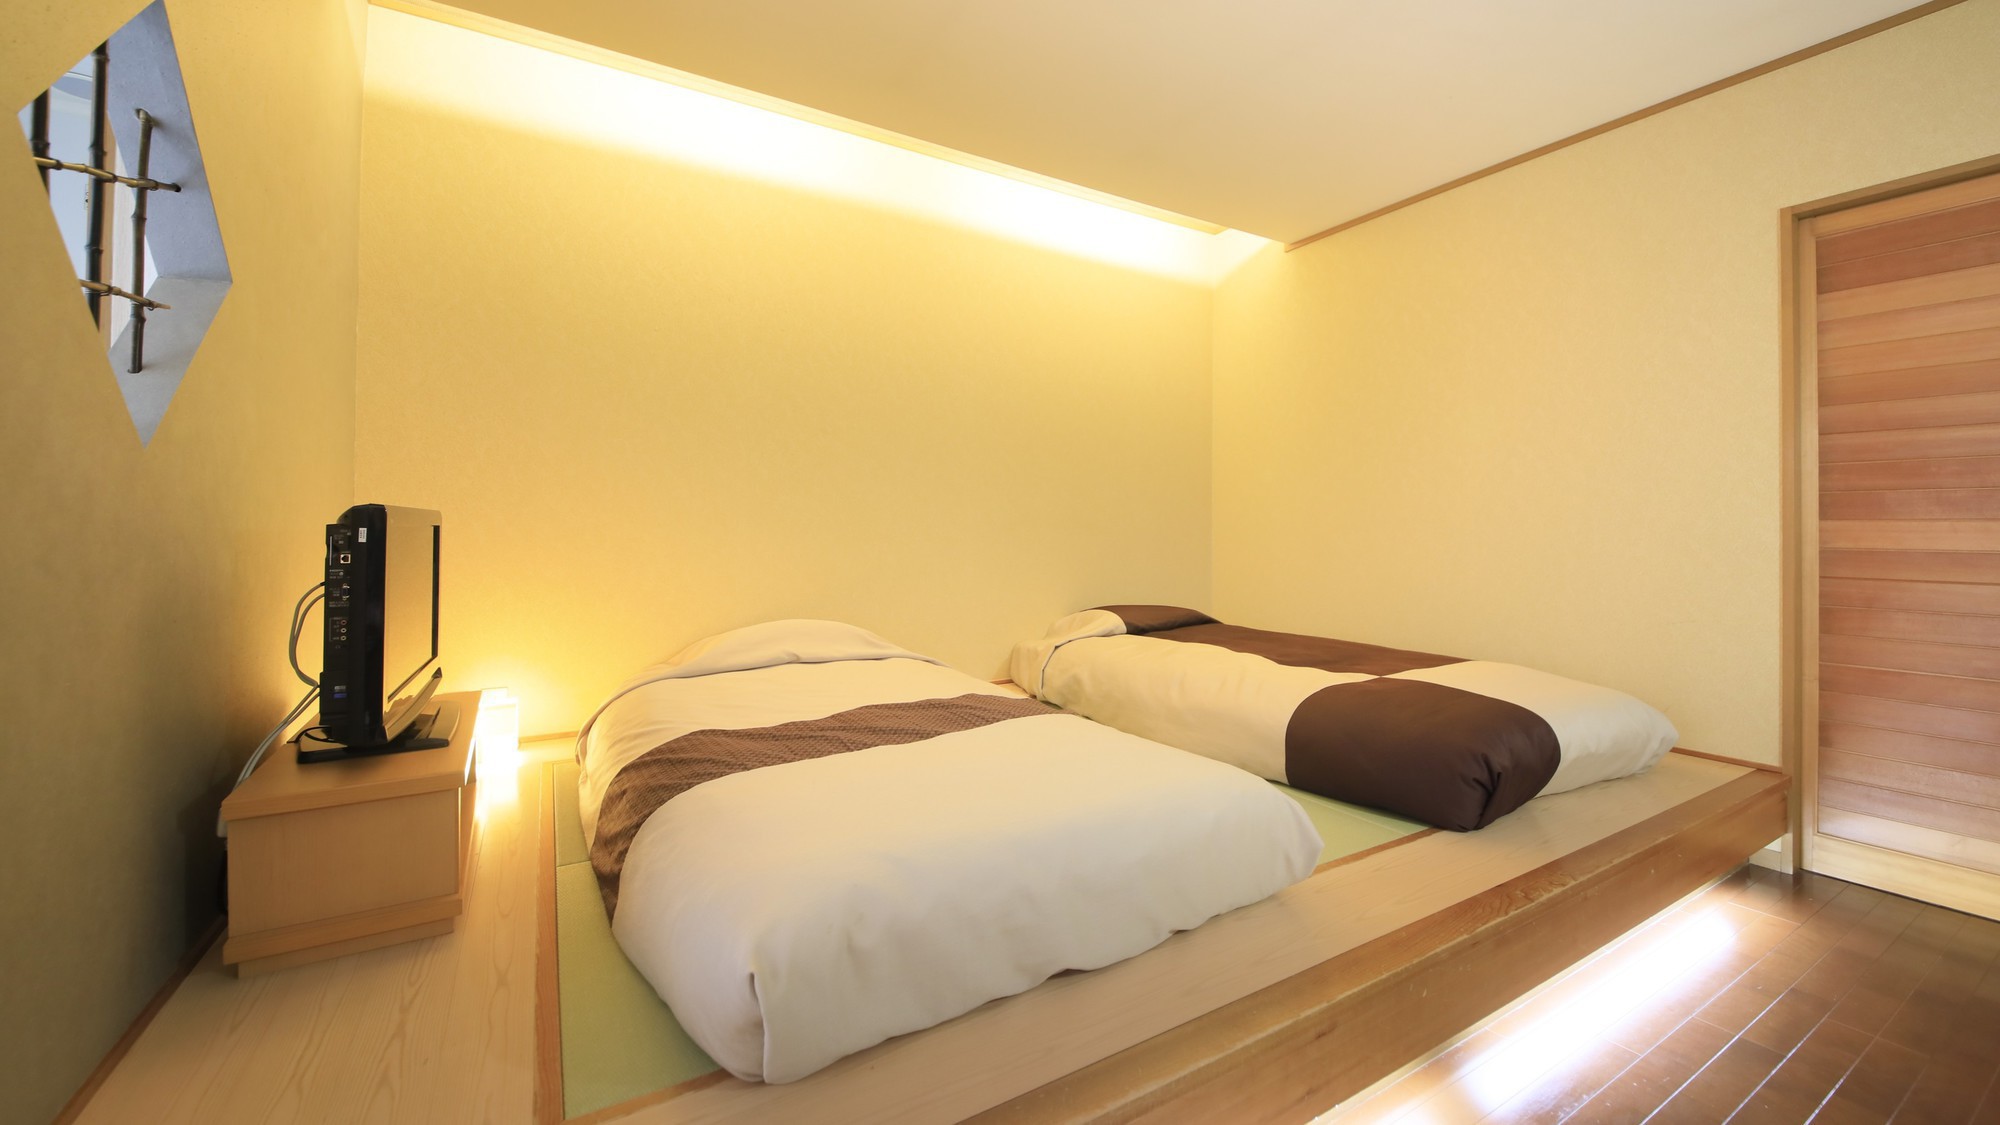 【客室一例】別館露天風呂付き客室(ツイン)…;和風ベッドを備えた、新しいスタイルのお部屋です。